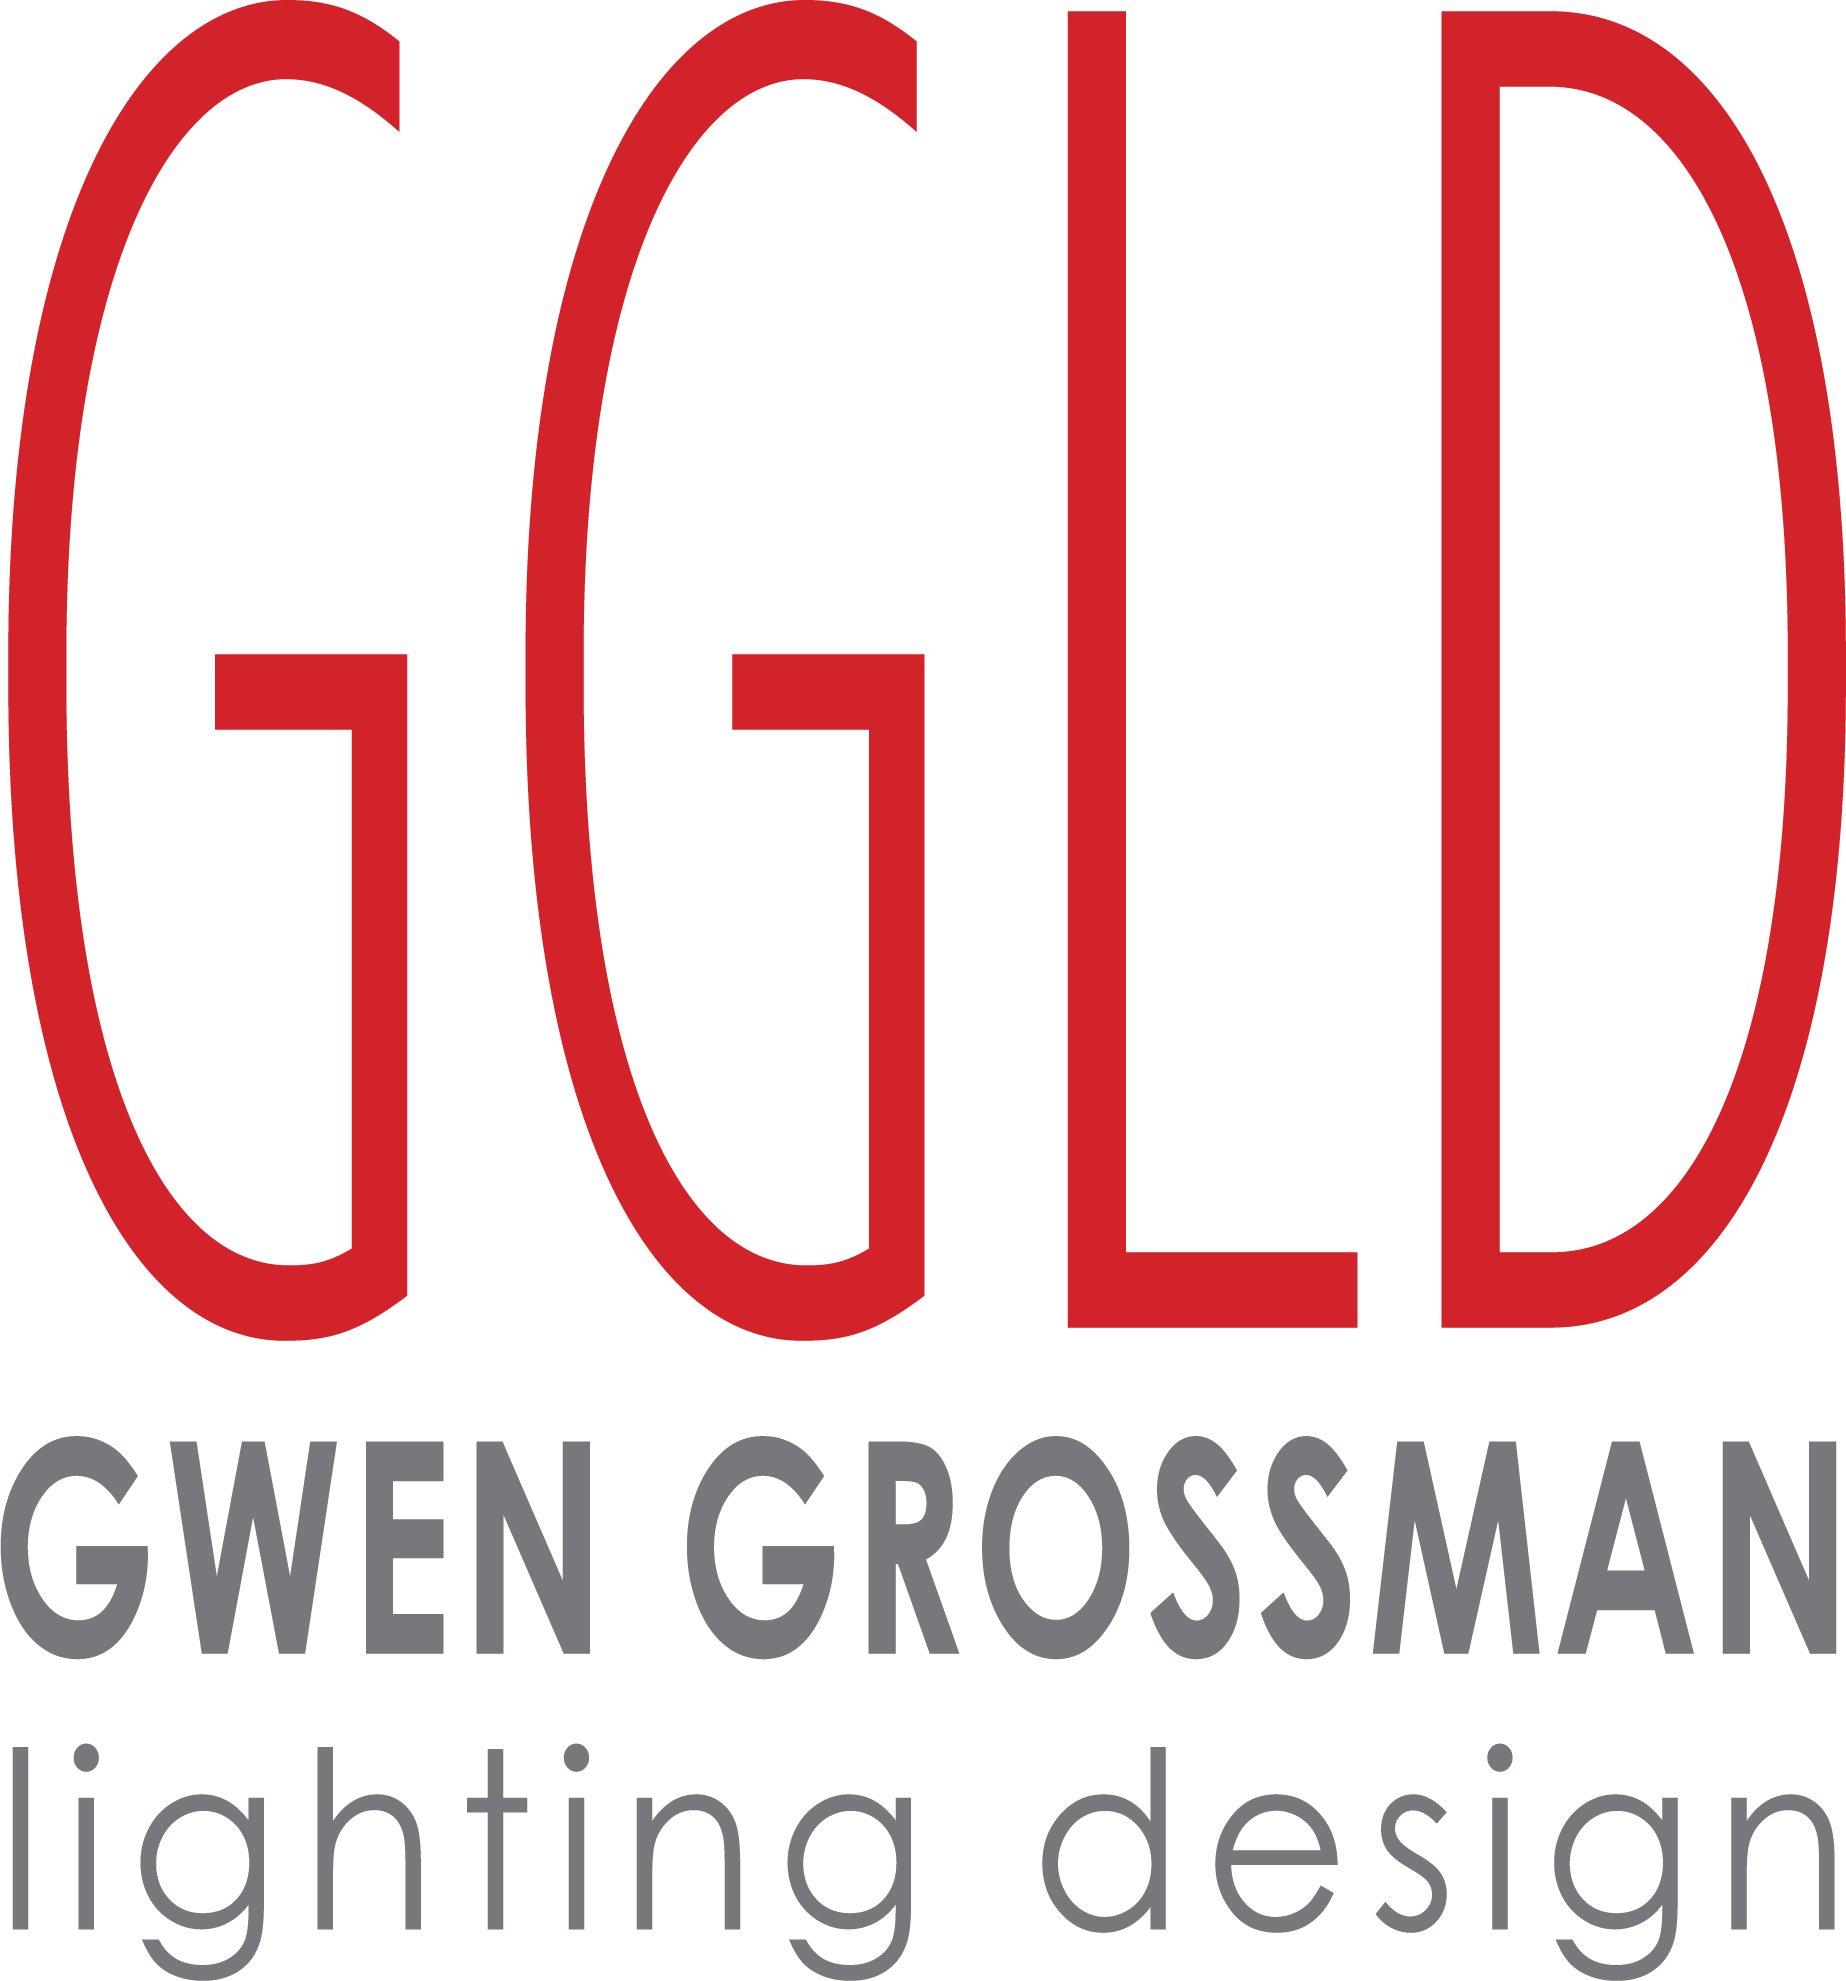 Gwen Grossman Lighting Design